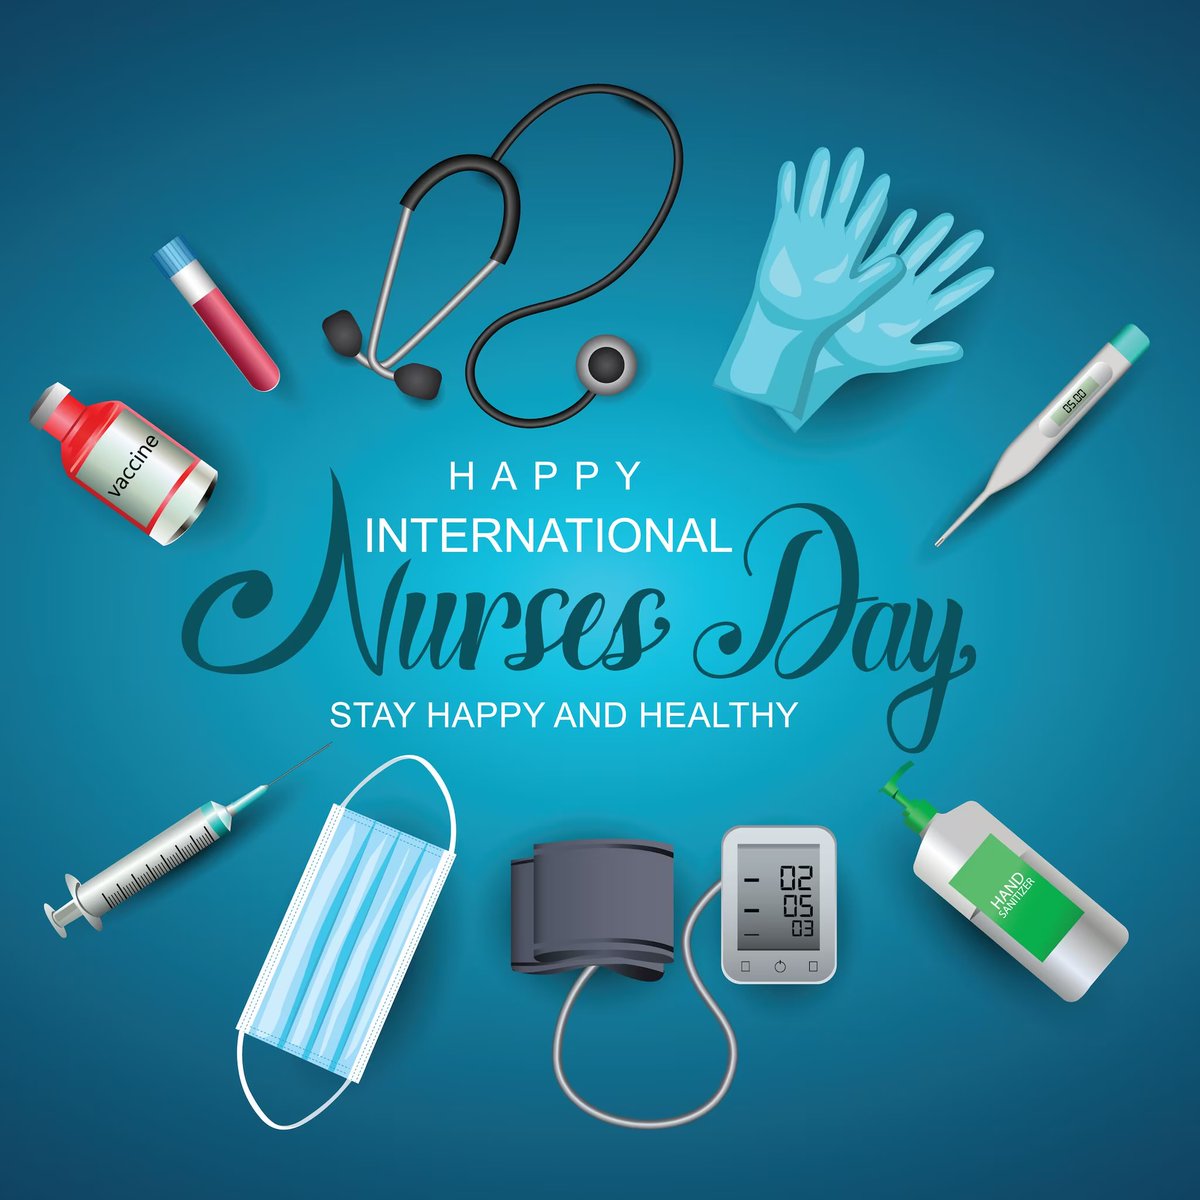 Happy Nurses Day
#NurseHeroes